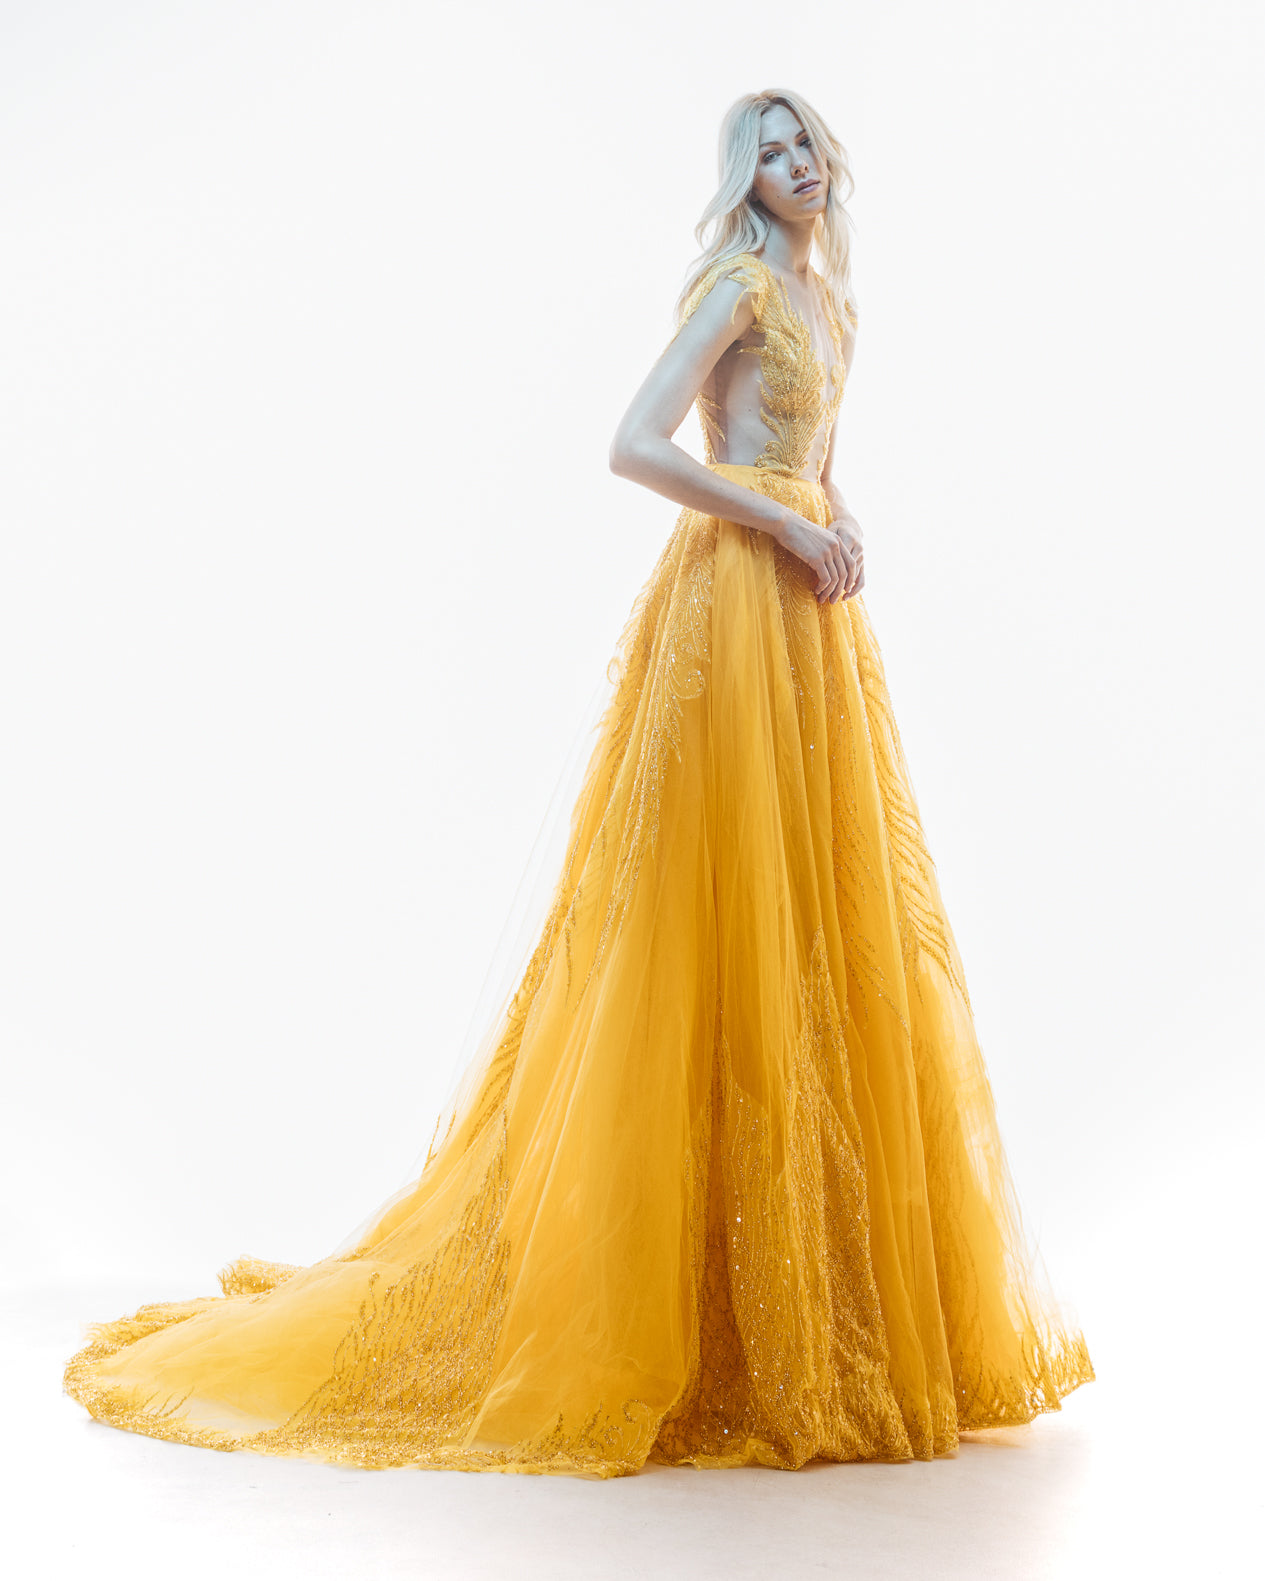 The Grandiose Gold Dress